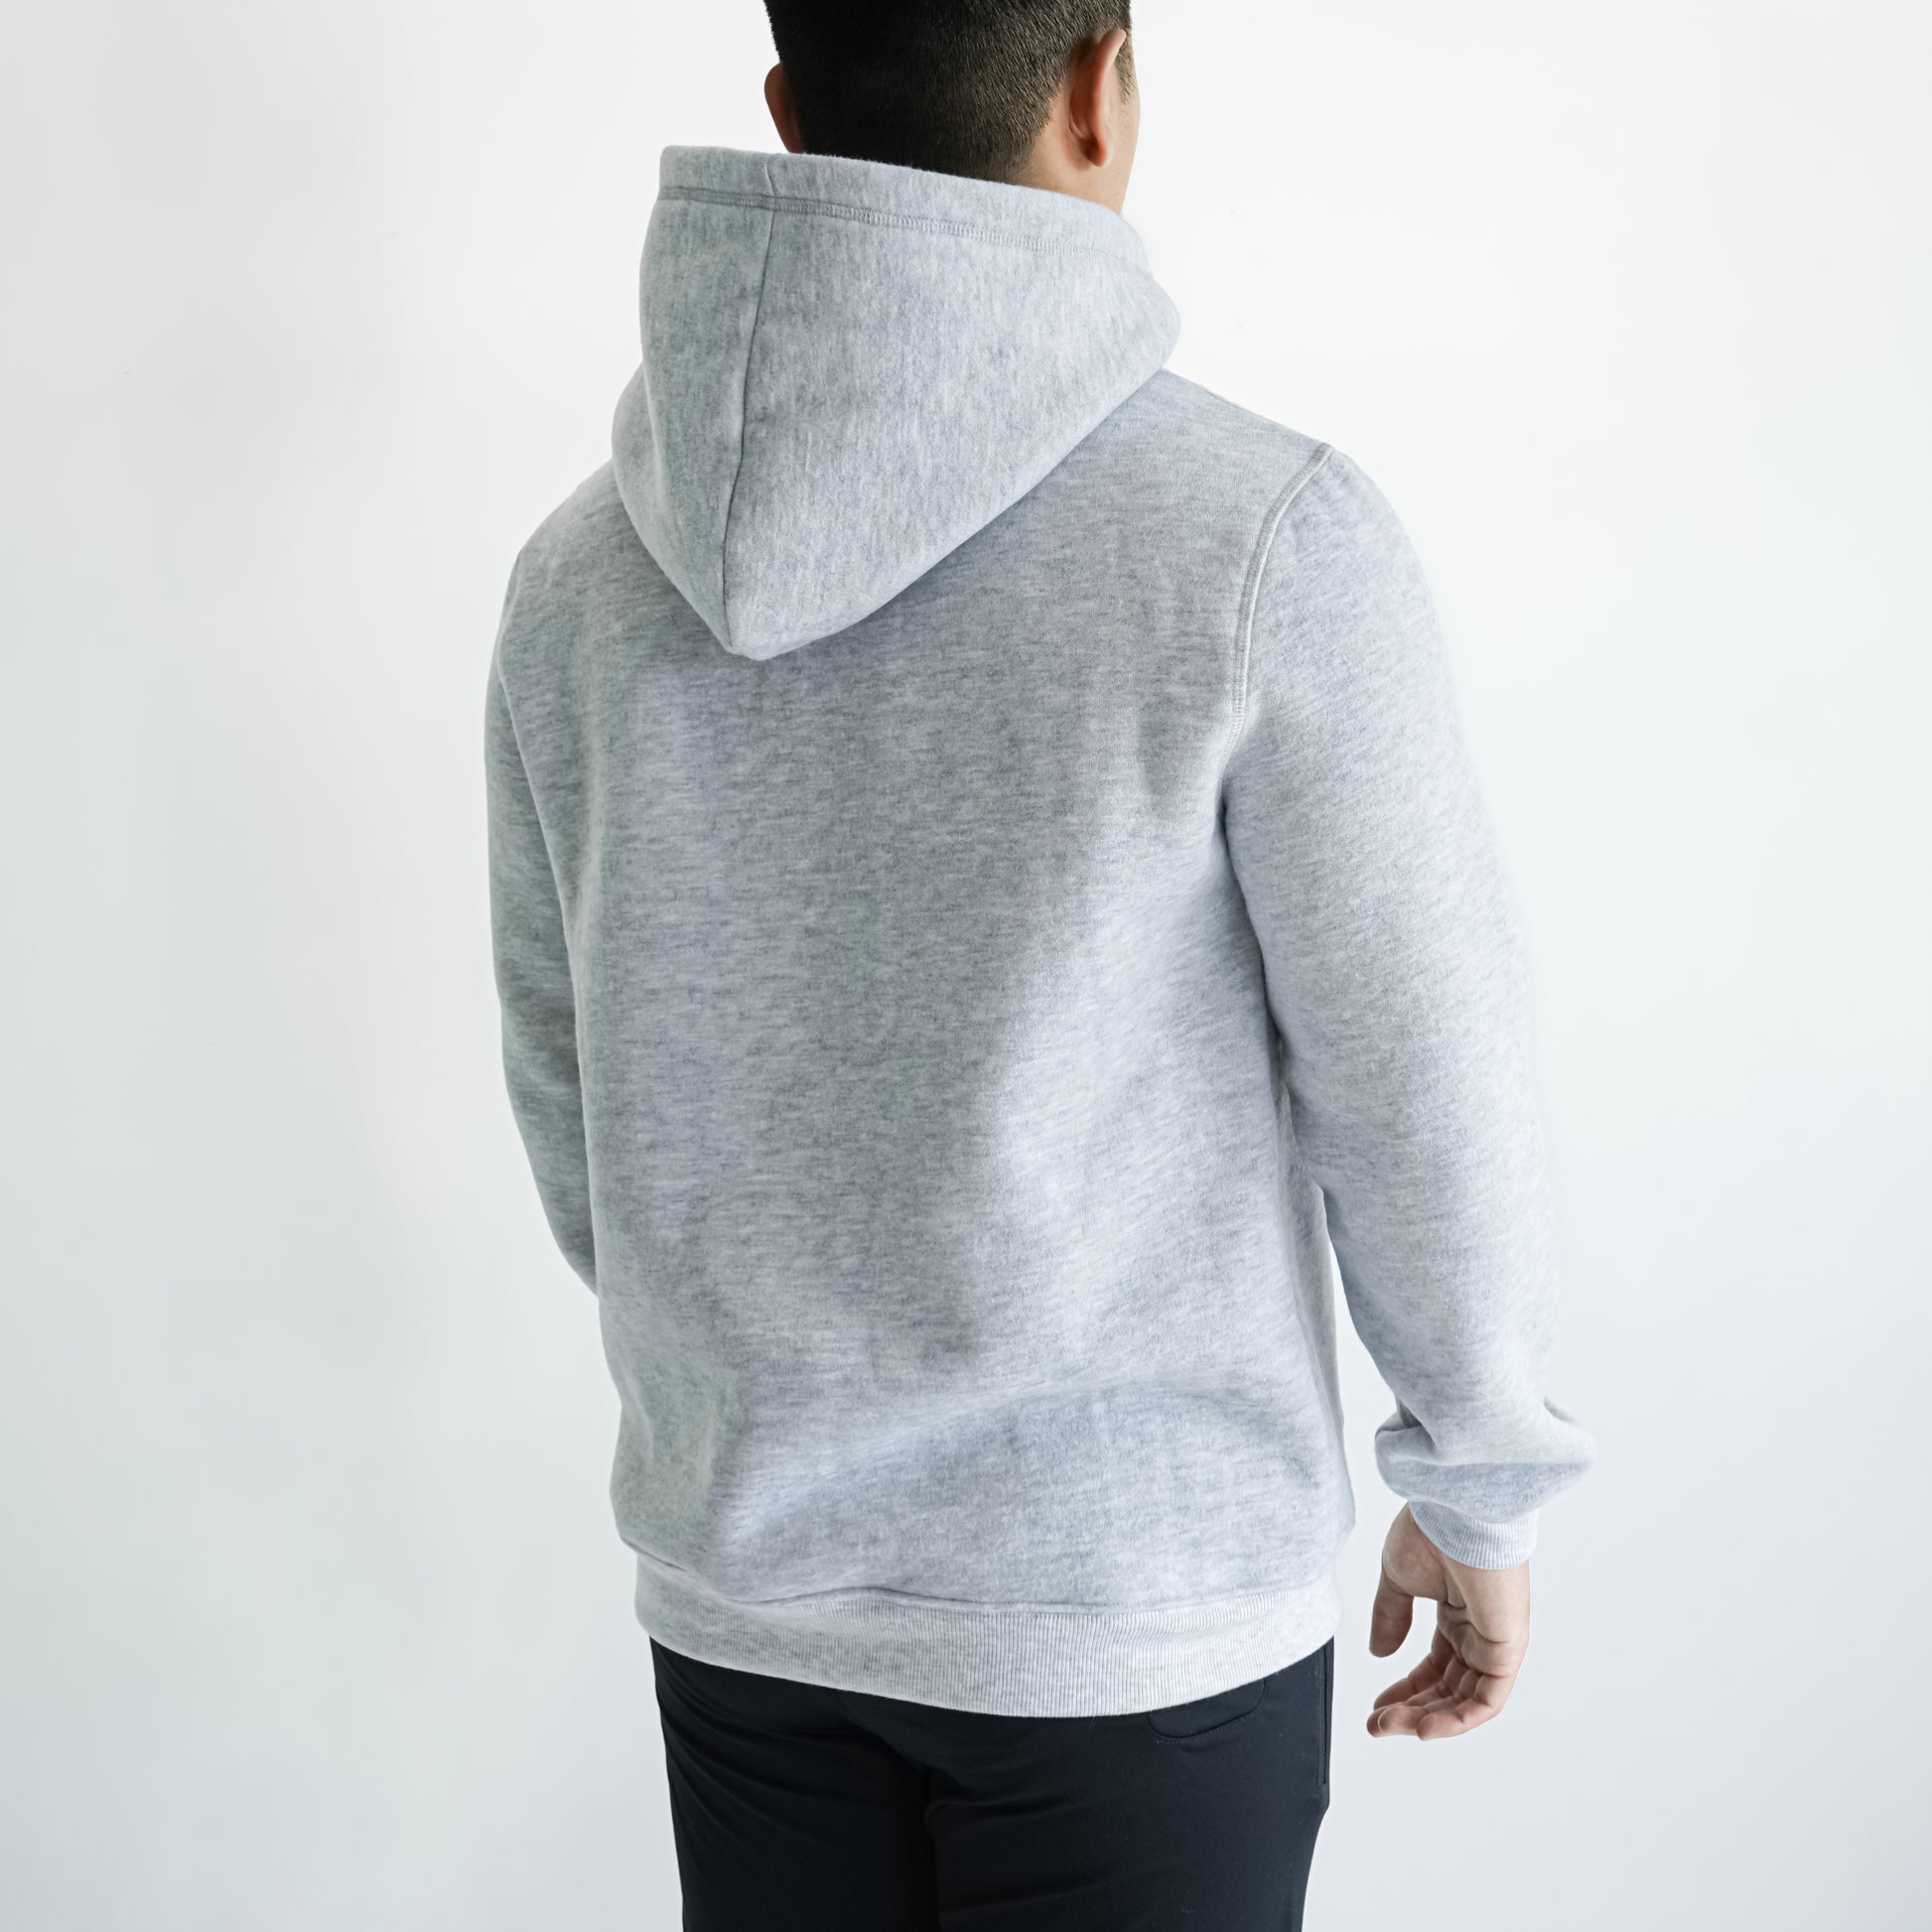 back of a man in grey hoodie